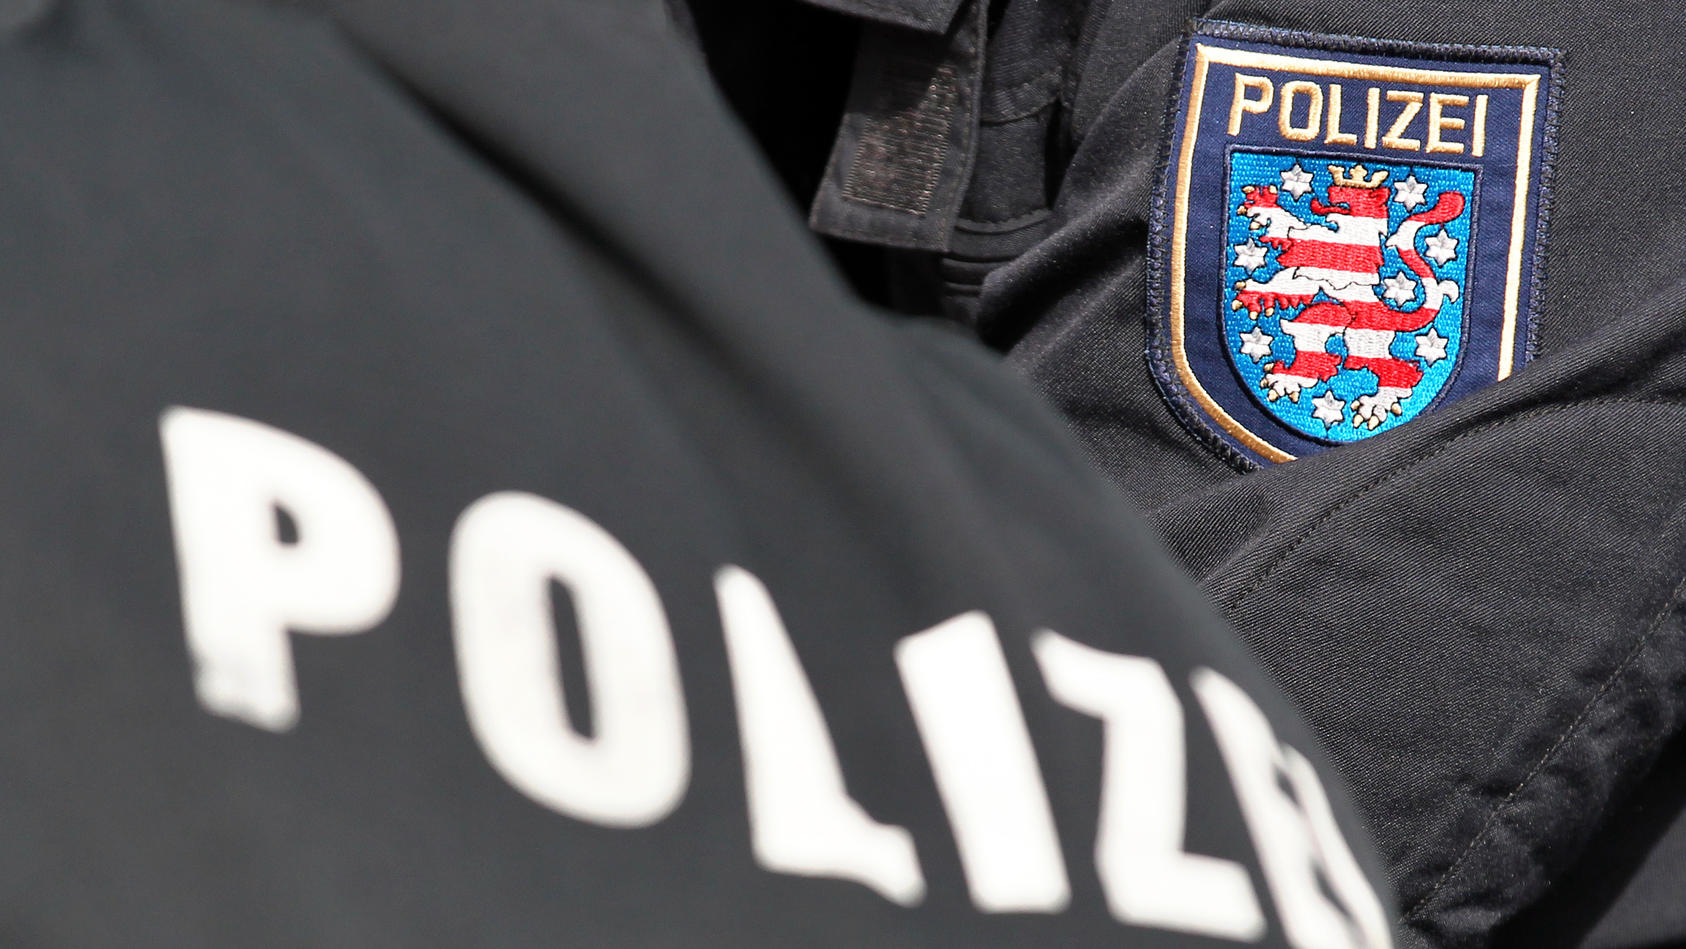 Der Schriftzug Polizei und das Logo von Thüringen stehen am Dienstag (10.04.2012) auf den Uniformen von zwei Polizeibeamten in Markkleeberg (Leipzig). Foto: Jan Woitas